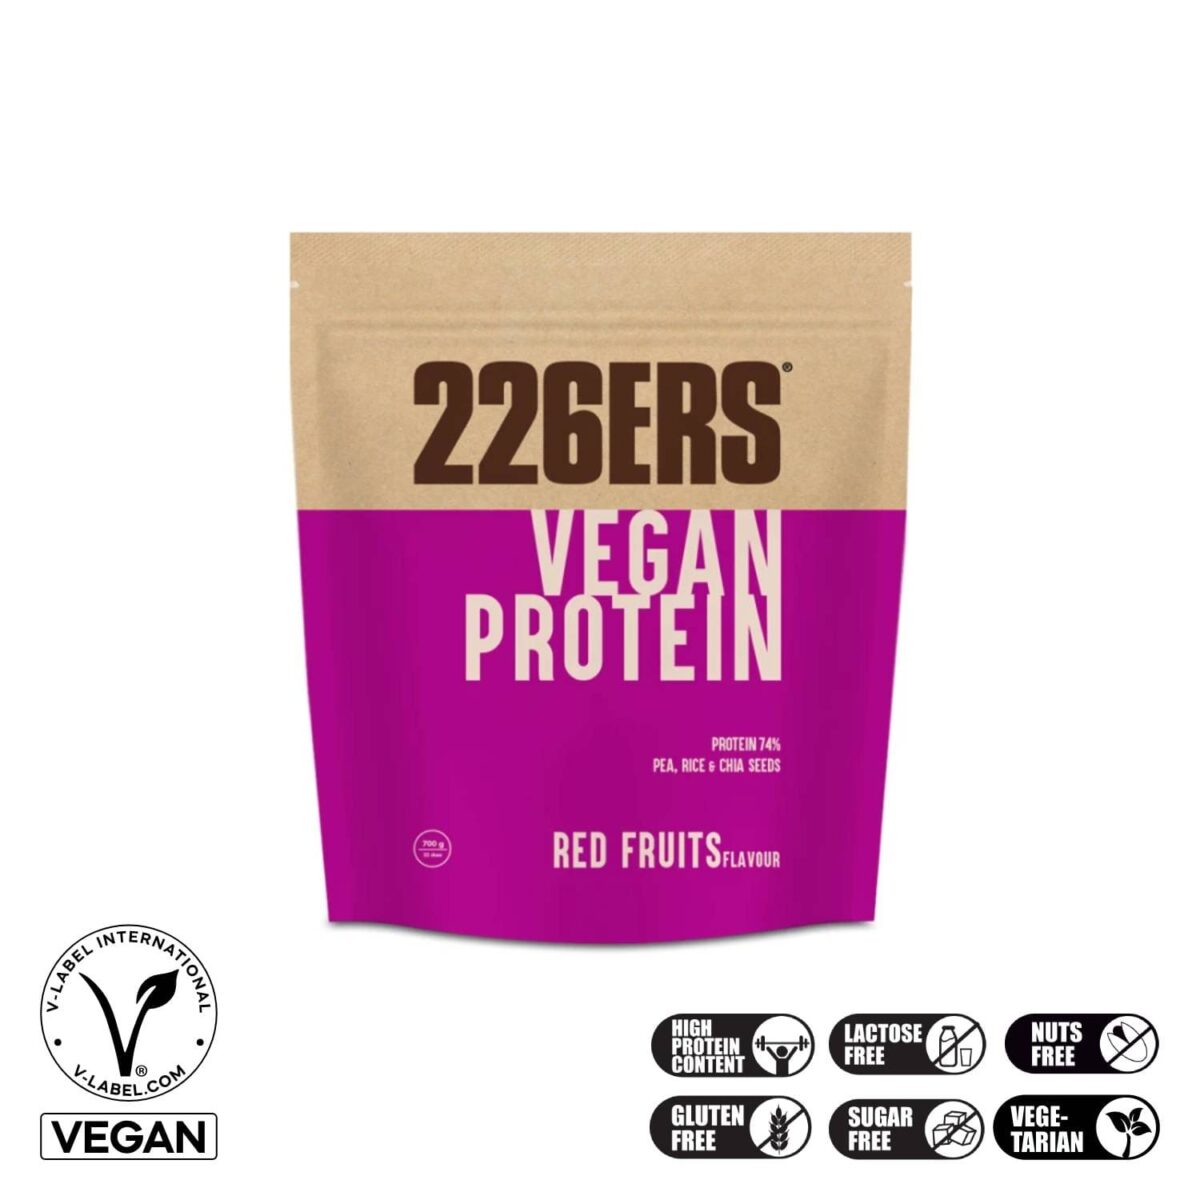 226ers Vegan Protein RedFruits